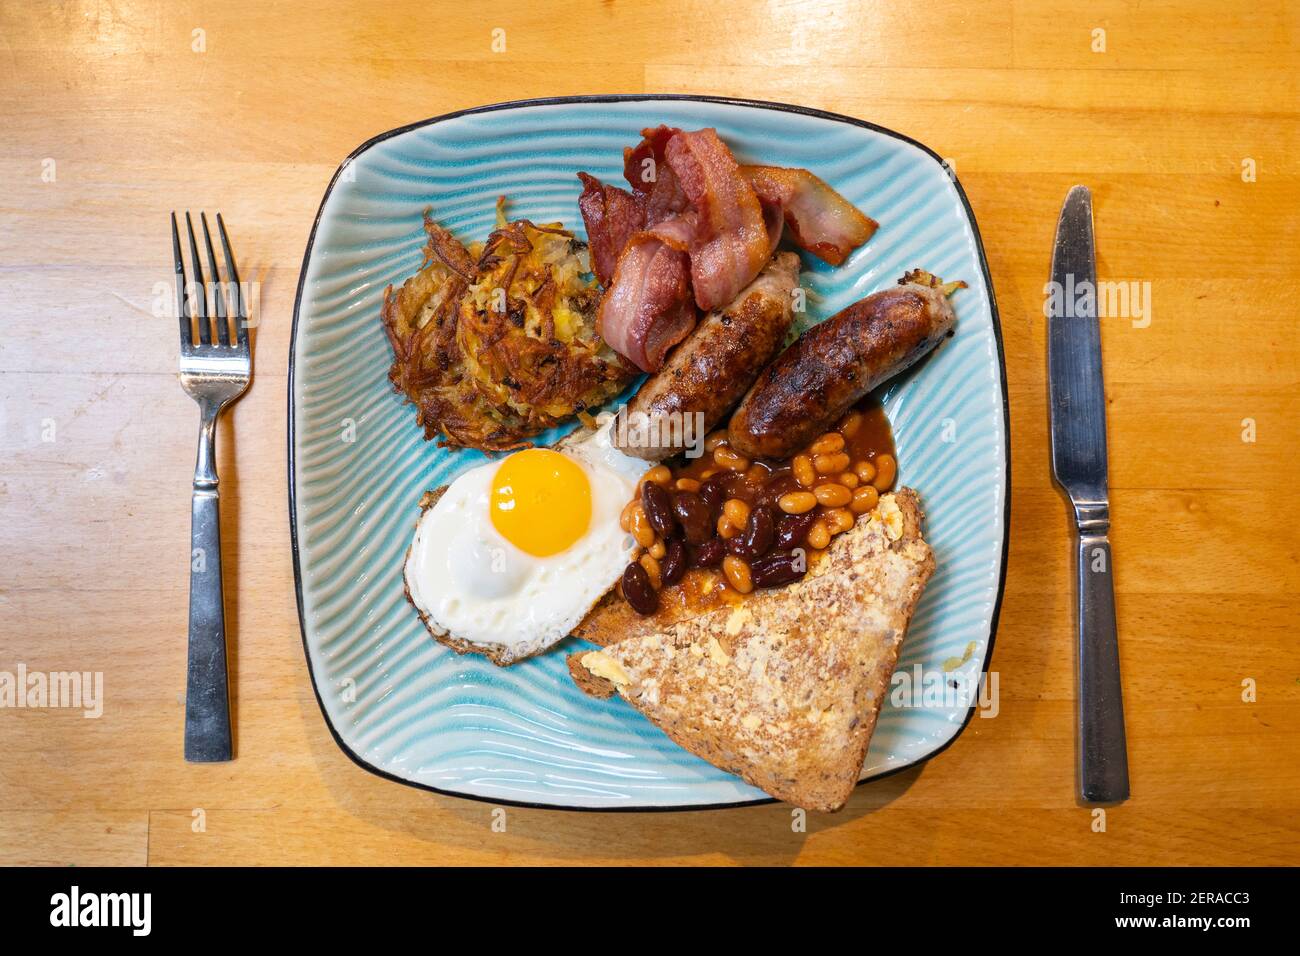 Una colazione inglese tradizionale servita su un piatto blu con salsicce, un uovo fritto, rash di pancetta, un hash brown, fagioli e fette di pane tostato Foto Stock